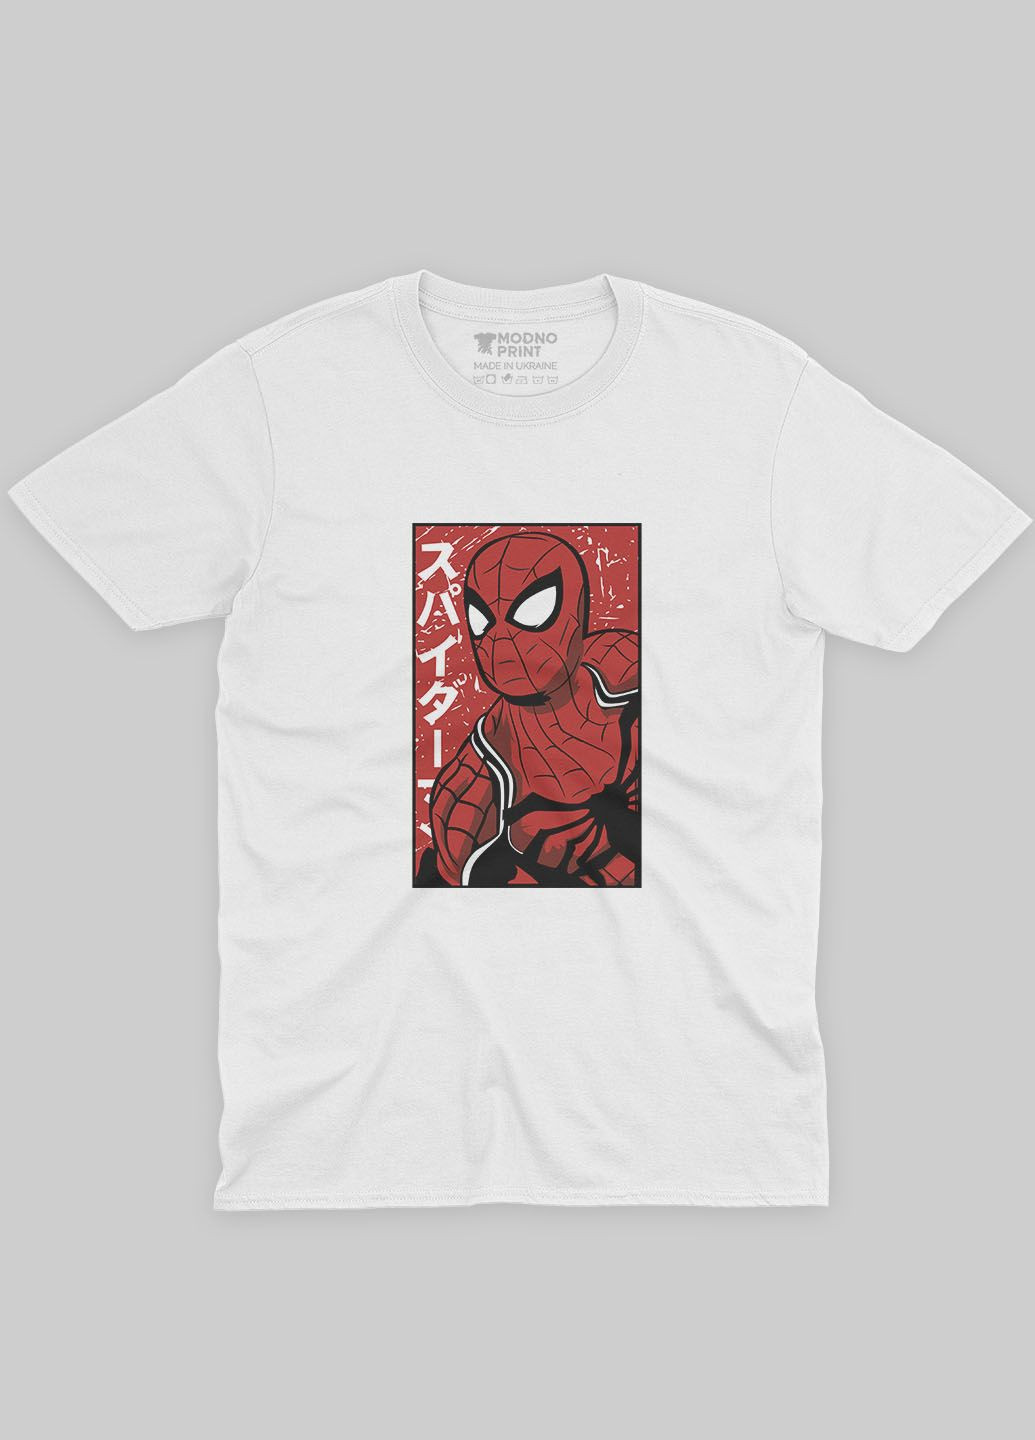 Мужская футболка с принтом супергероя - Человек-паук (TS001-1-WHI-006-014-044-F) Modno - (292120152)